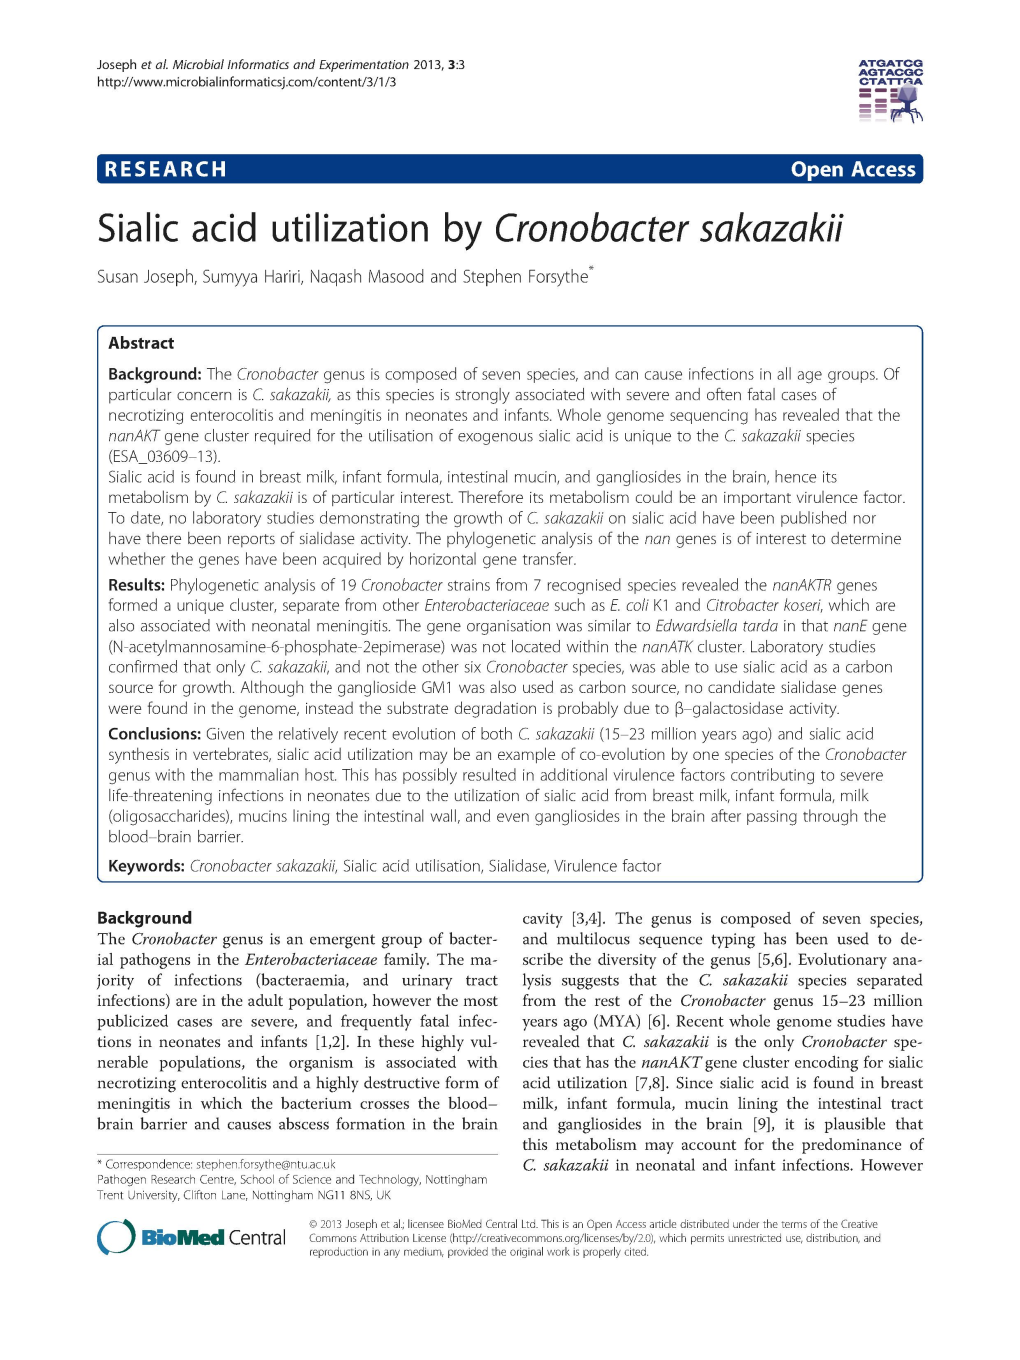 Sialic Acid Utilization by Cronobacter Sakazakii